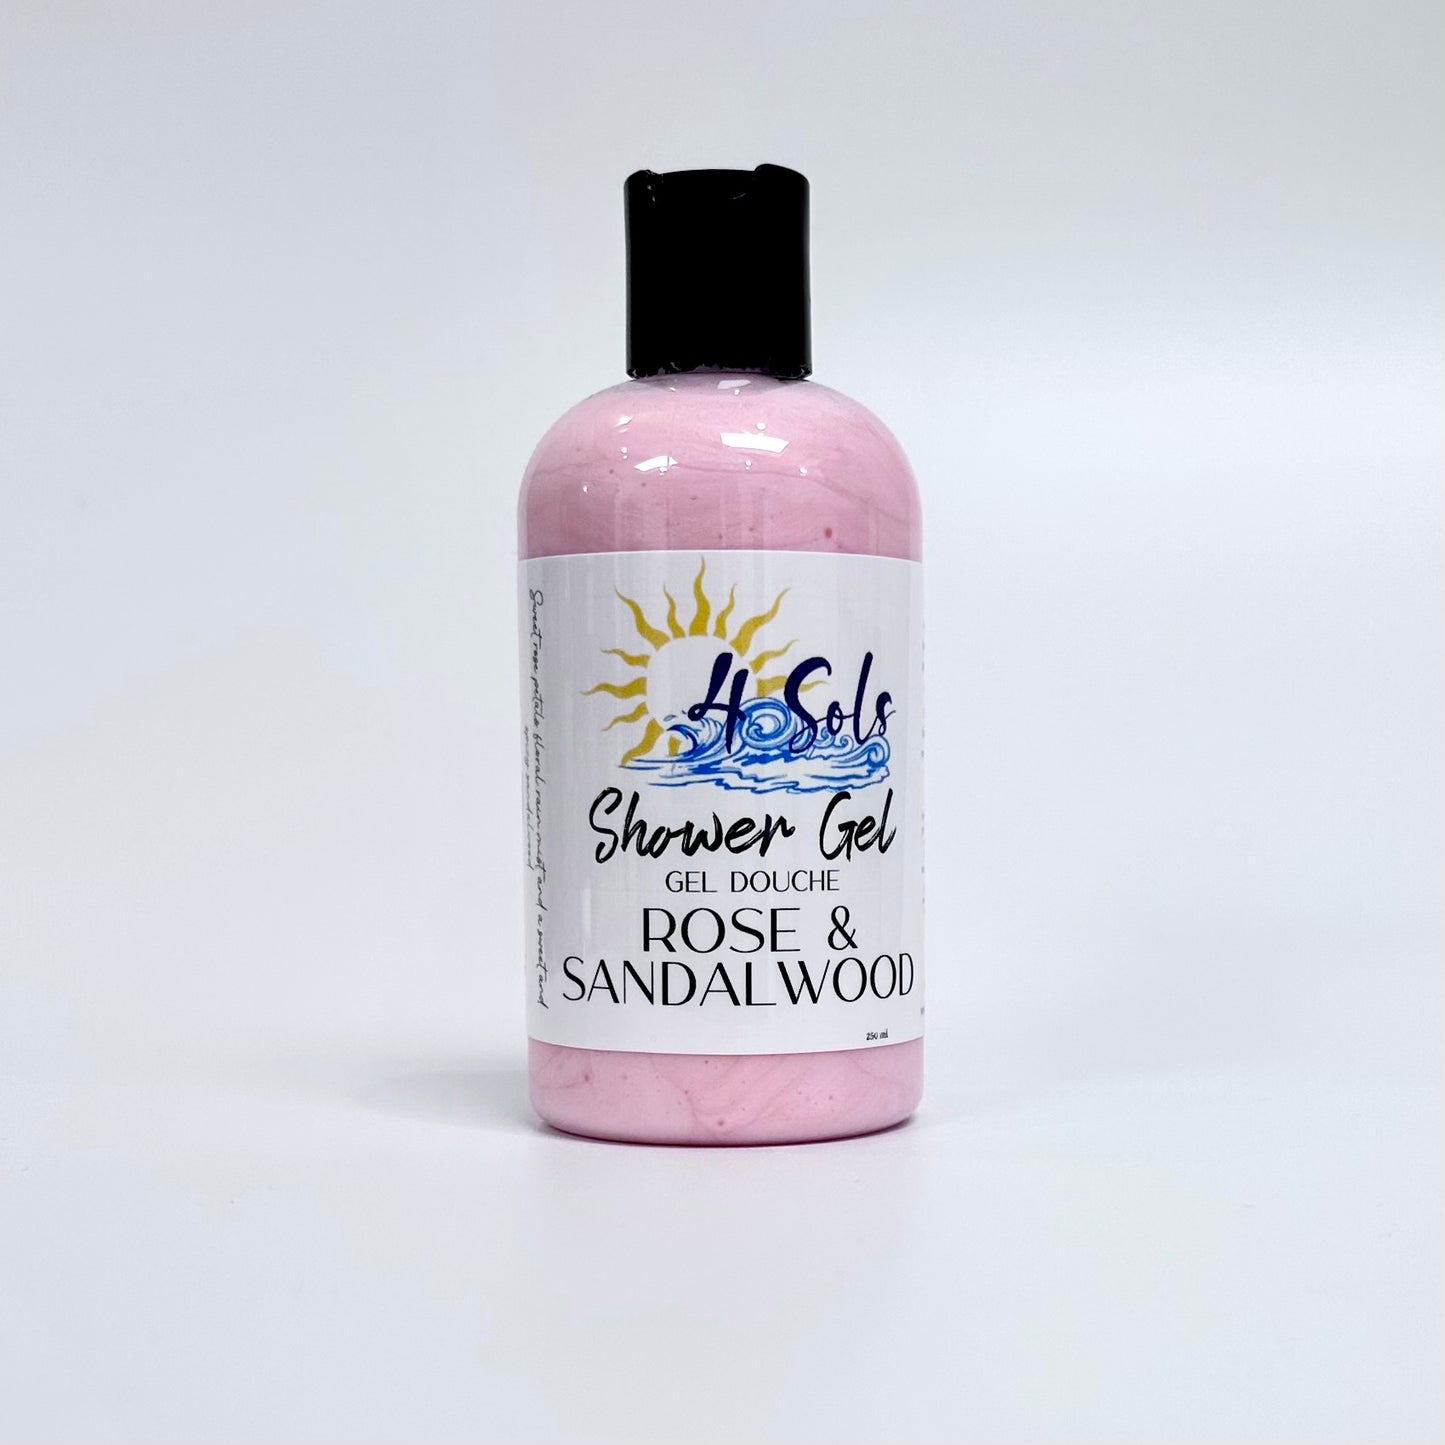 Shower Gel - Rose & Sandalwood